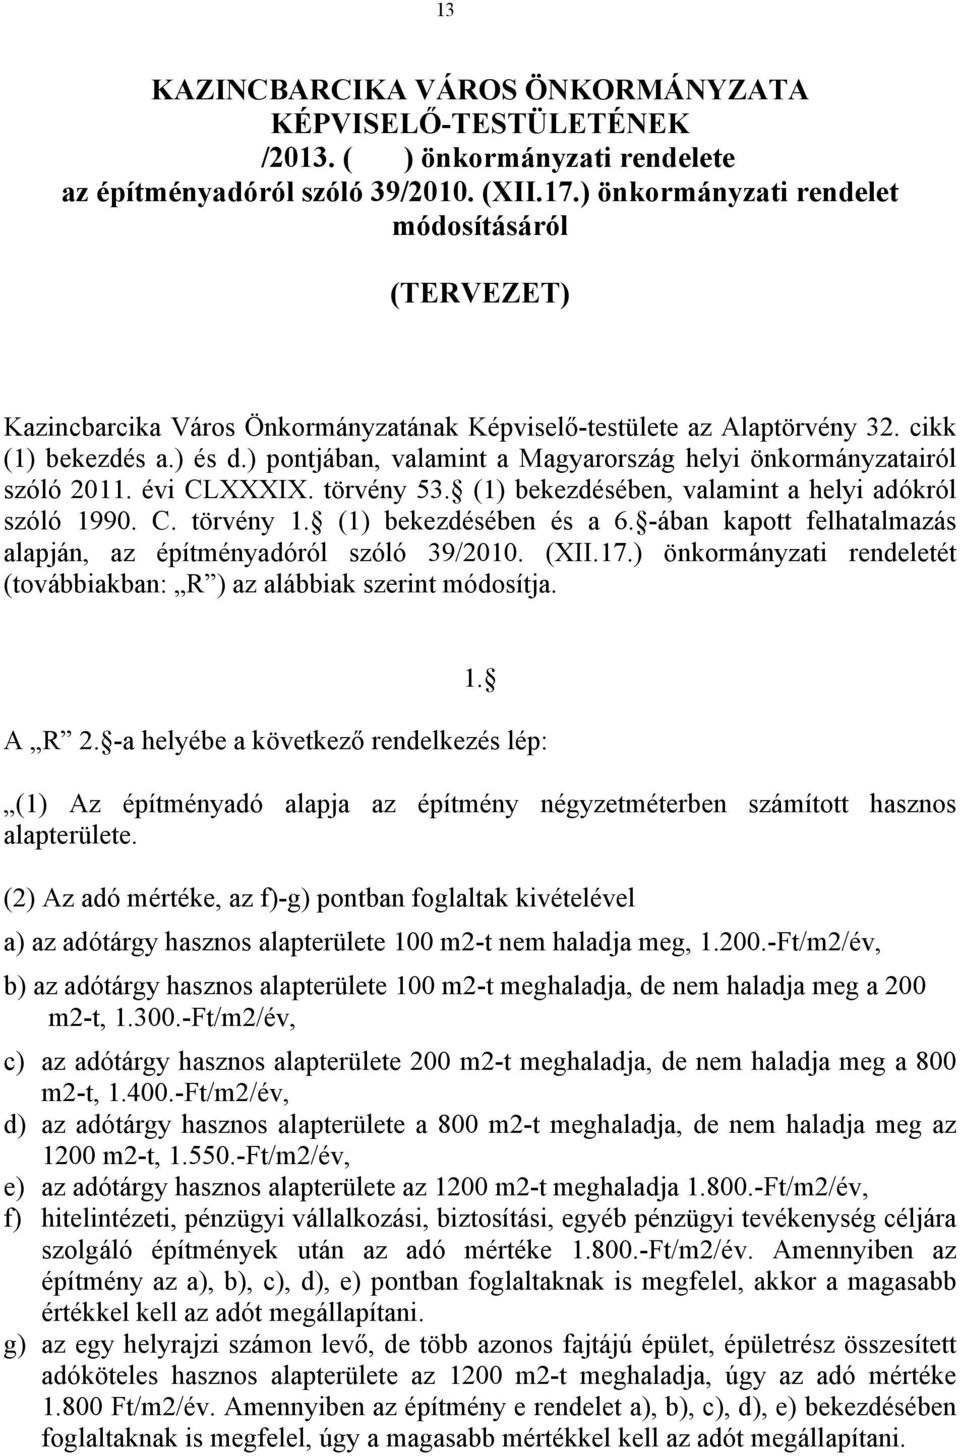 ) pontjában, valamint a Magyarország helyi önkormányzatairól szóló 2011. évi CLXXXIX. törvény 53. (1) bekezdésében, valamint a helyi adókról szóló 1990. C. törvény 1. (1) bekezdésében és a 6.